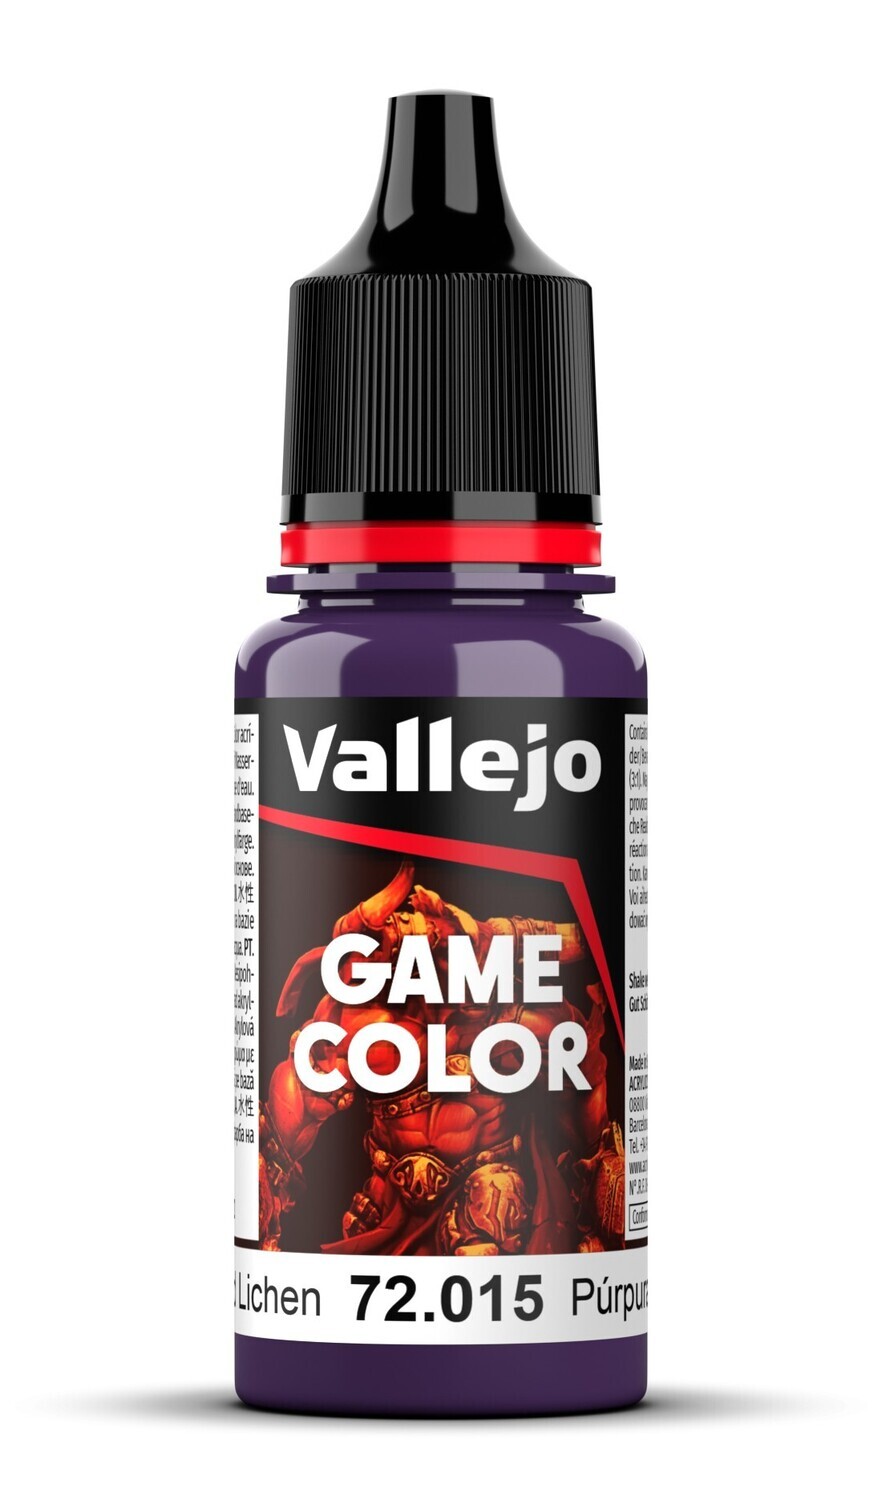 Hexed Lichen - Game Color Farbe - Vallejo